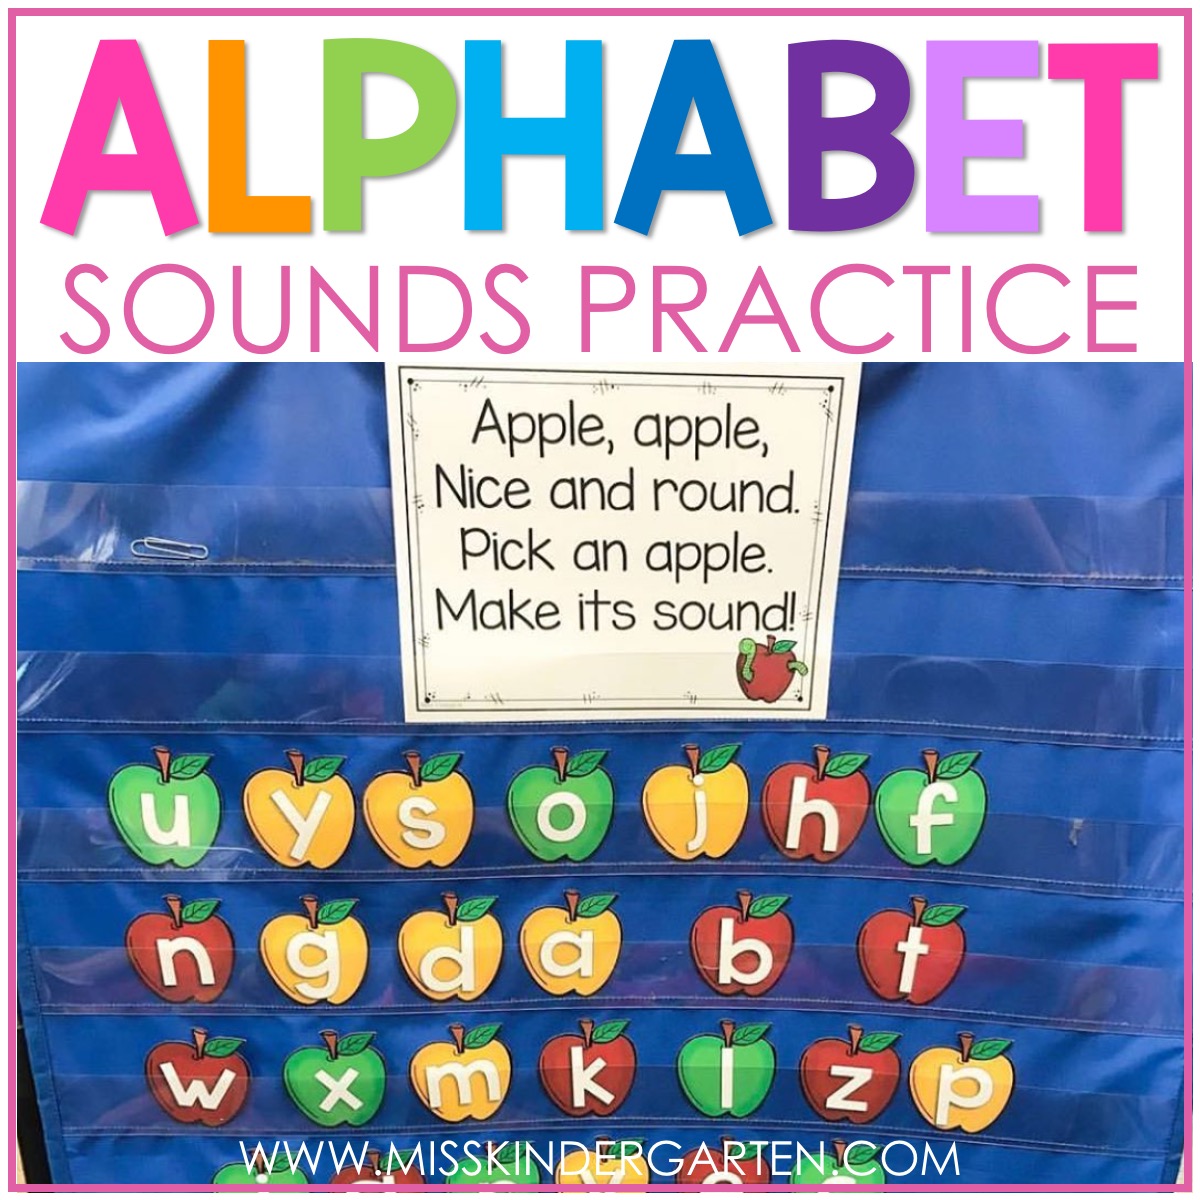 Alphabet Sounds Practice Poems - Miss Kindergarten